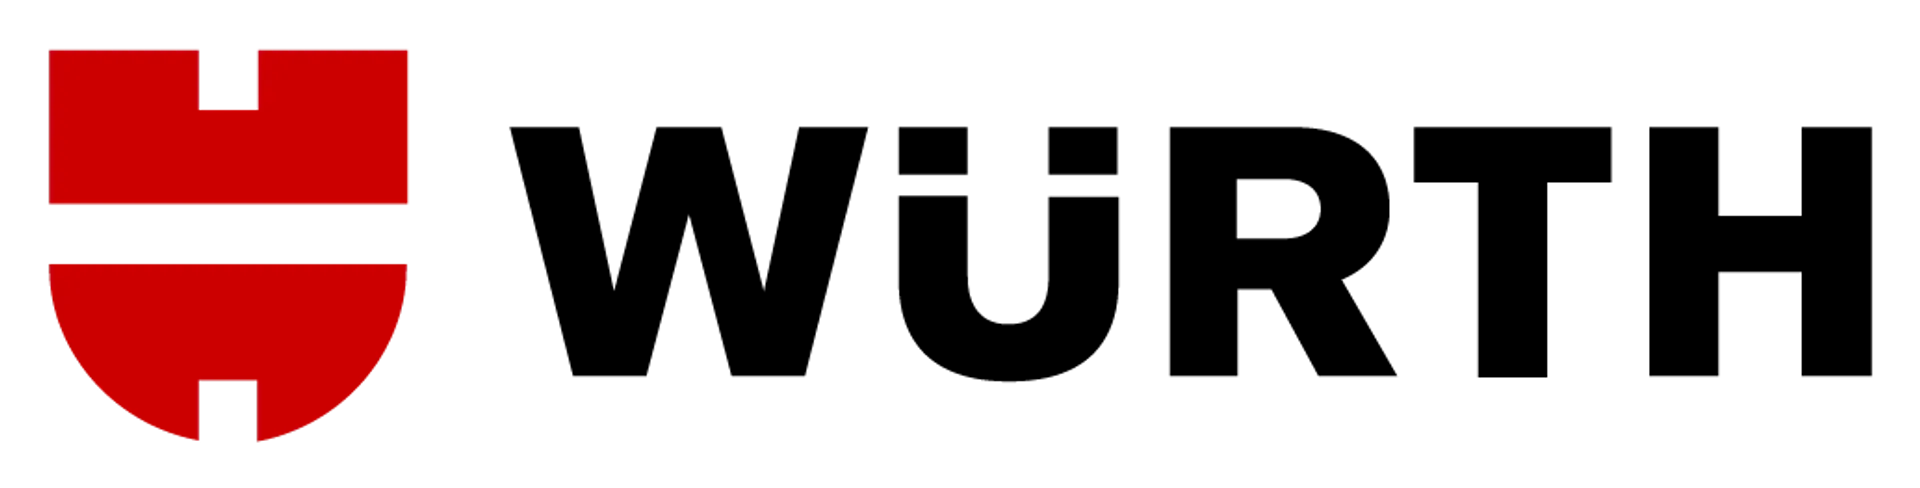 WÜRTH logo die aktuell Flugblatt